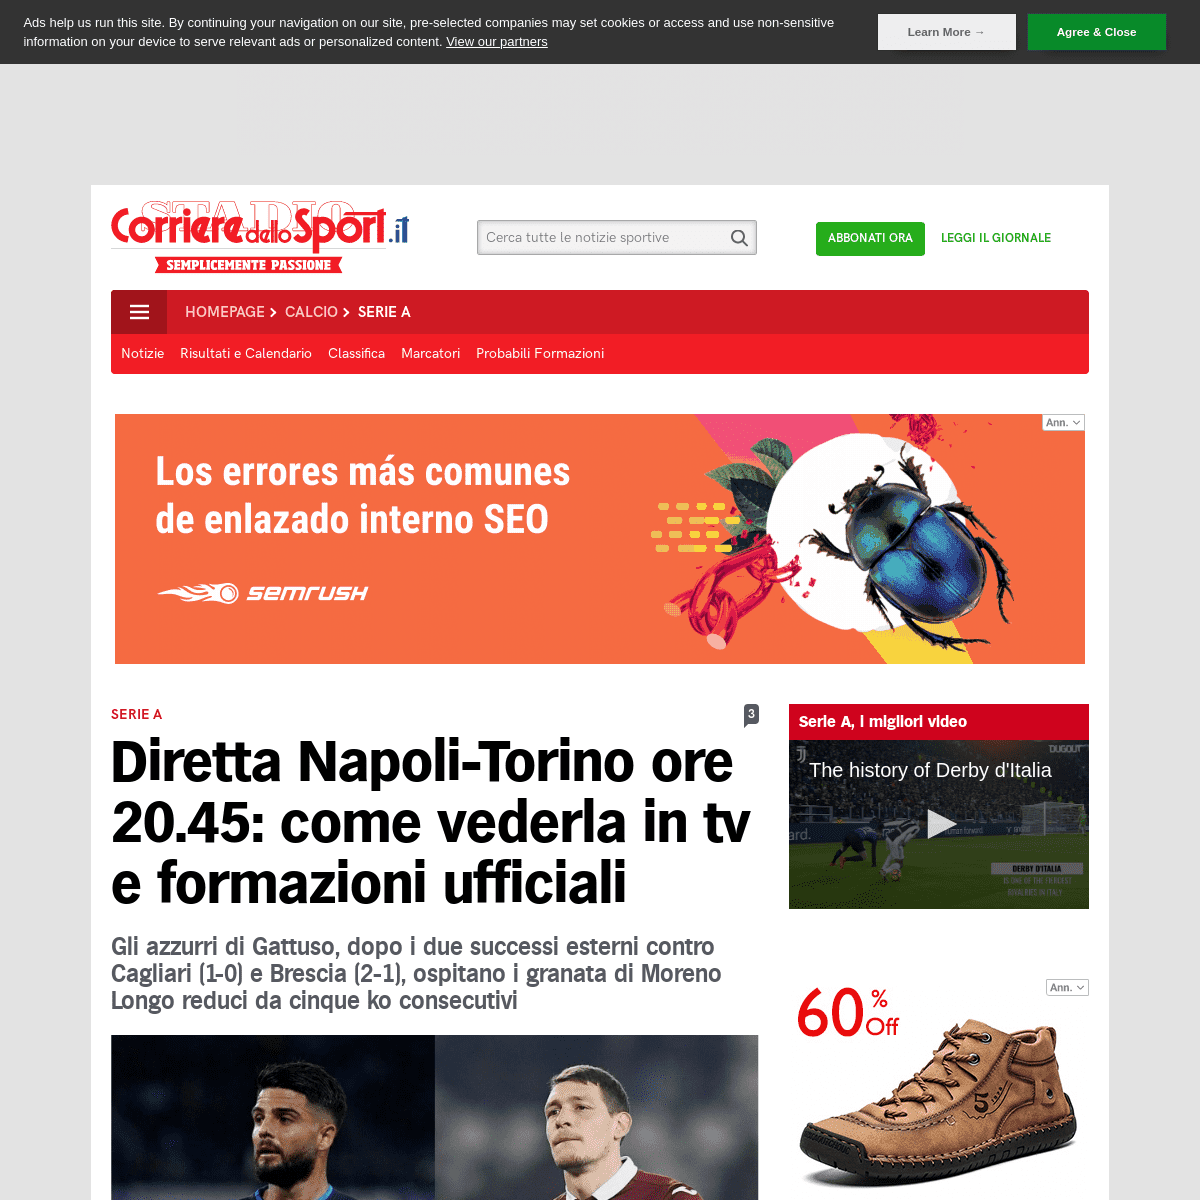 A complete backup of www.corrieredellosport.it/news/calcio/serie-a/2020/02/29-67267499/diretta_napoli-torino_ore_20_45_come_vede